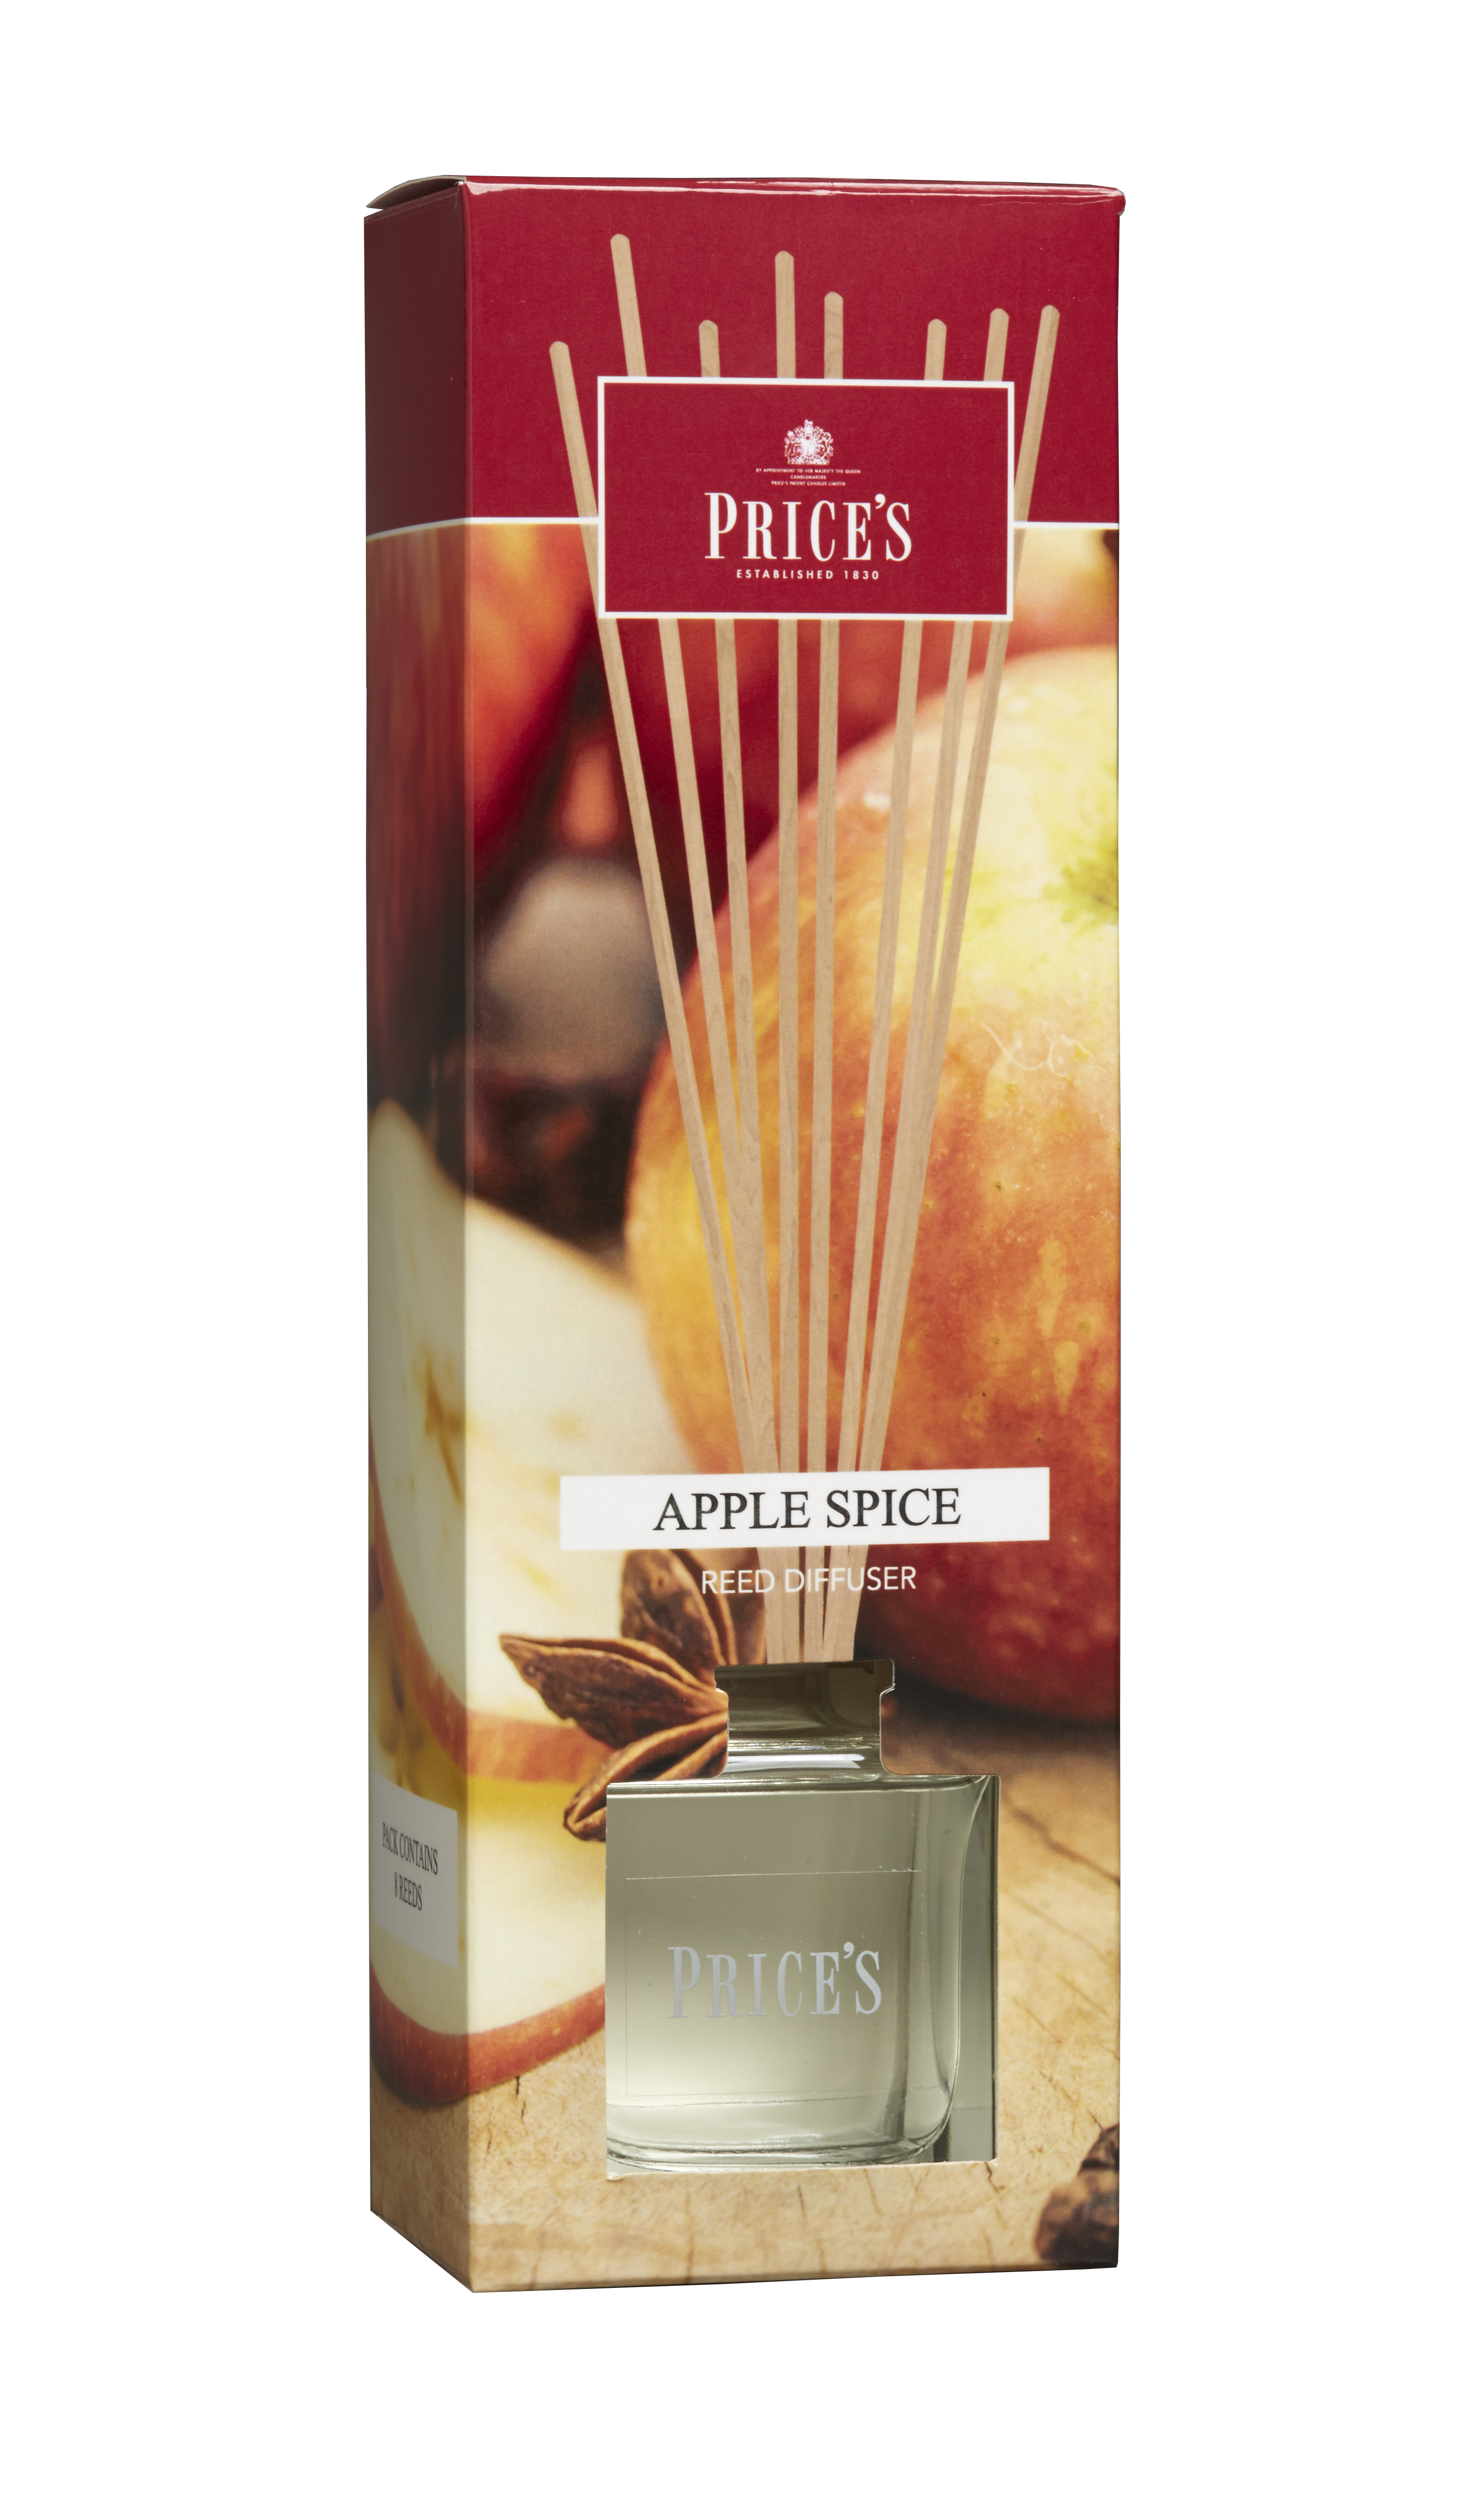 Prices Raumduft "Apple Spice" 100ml      